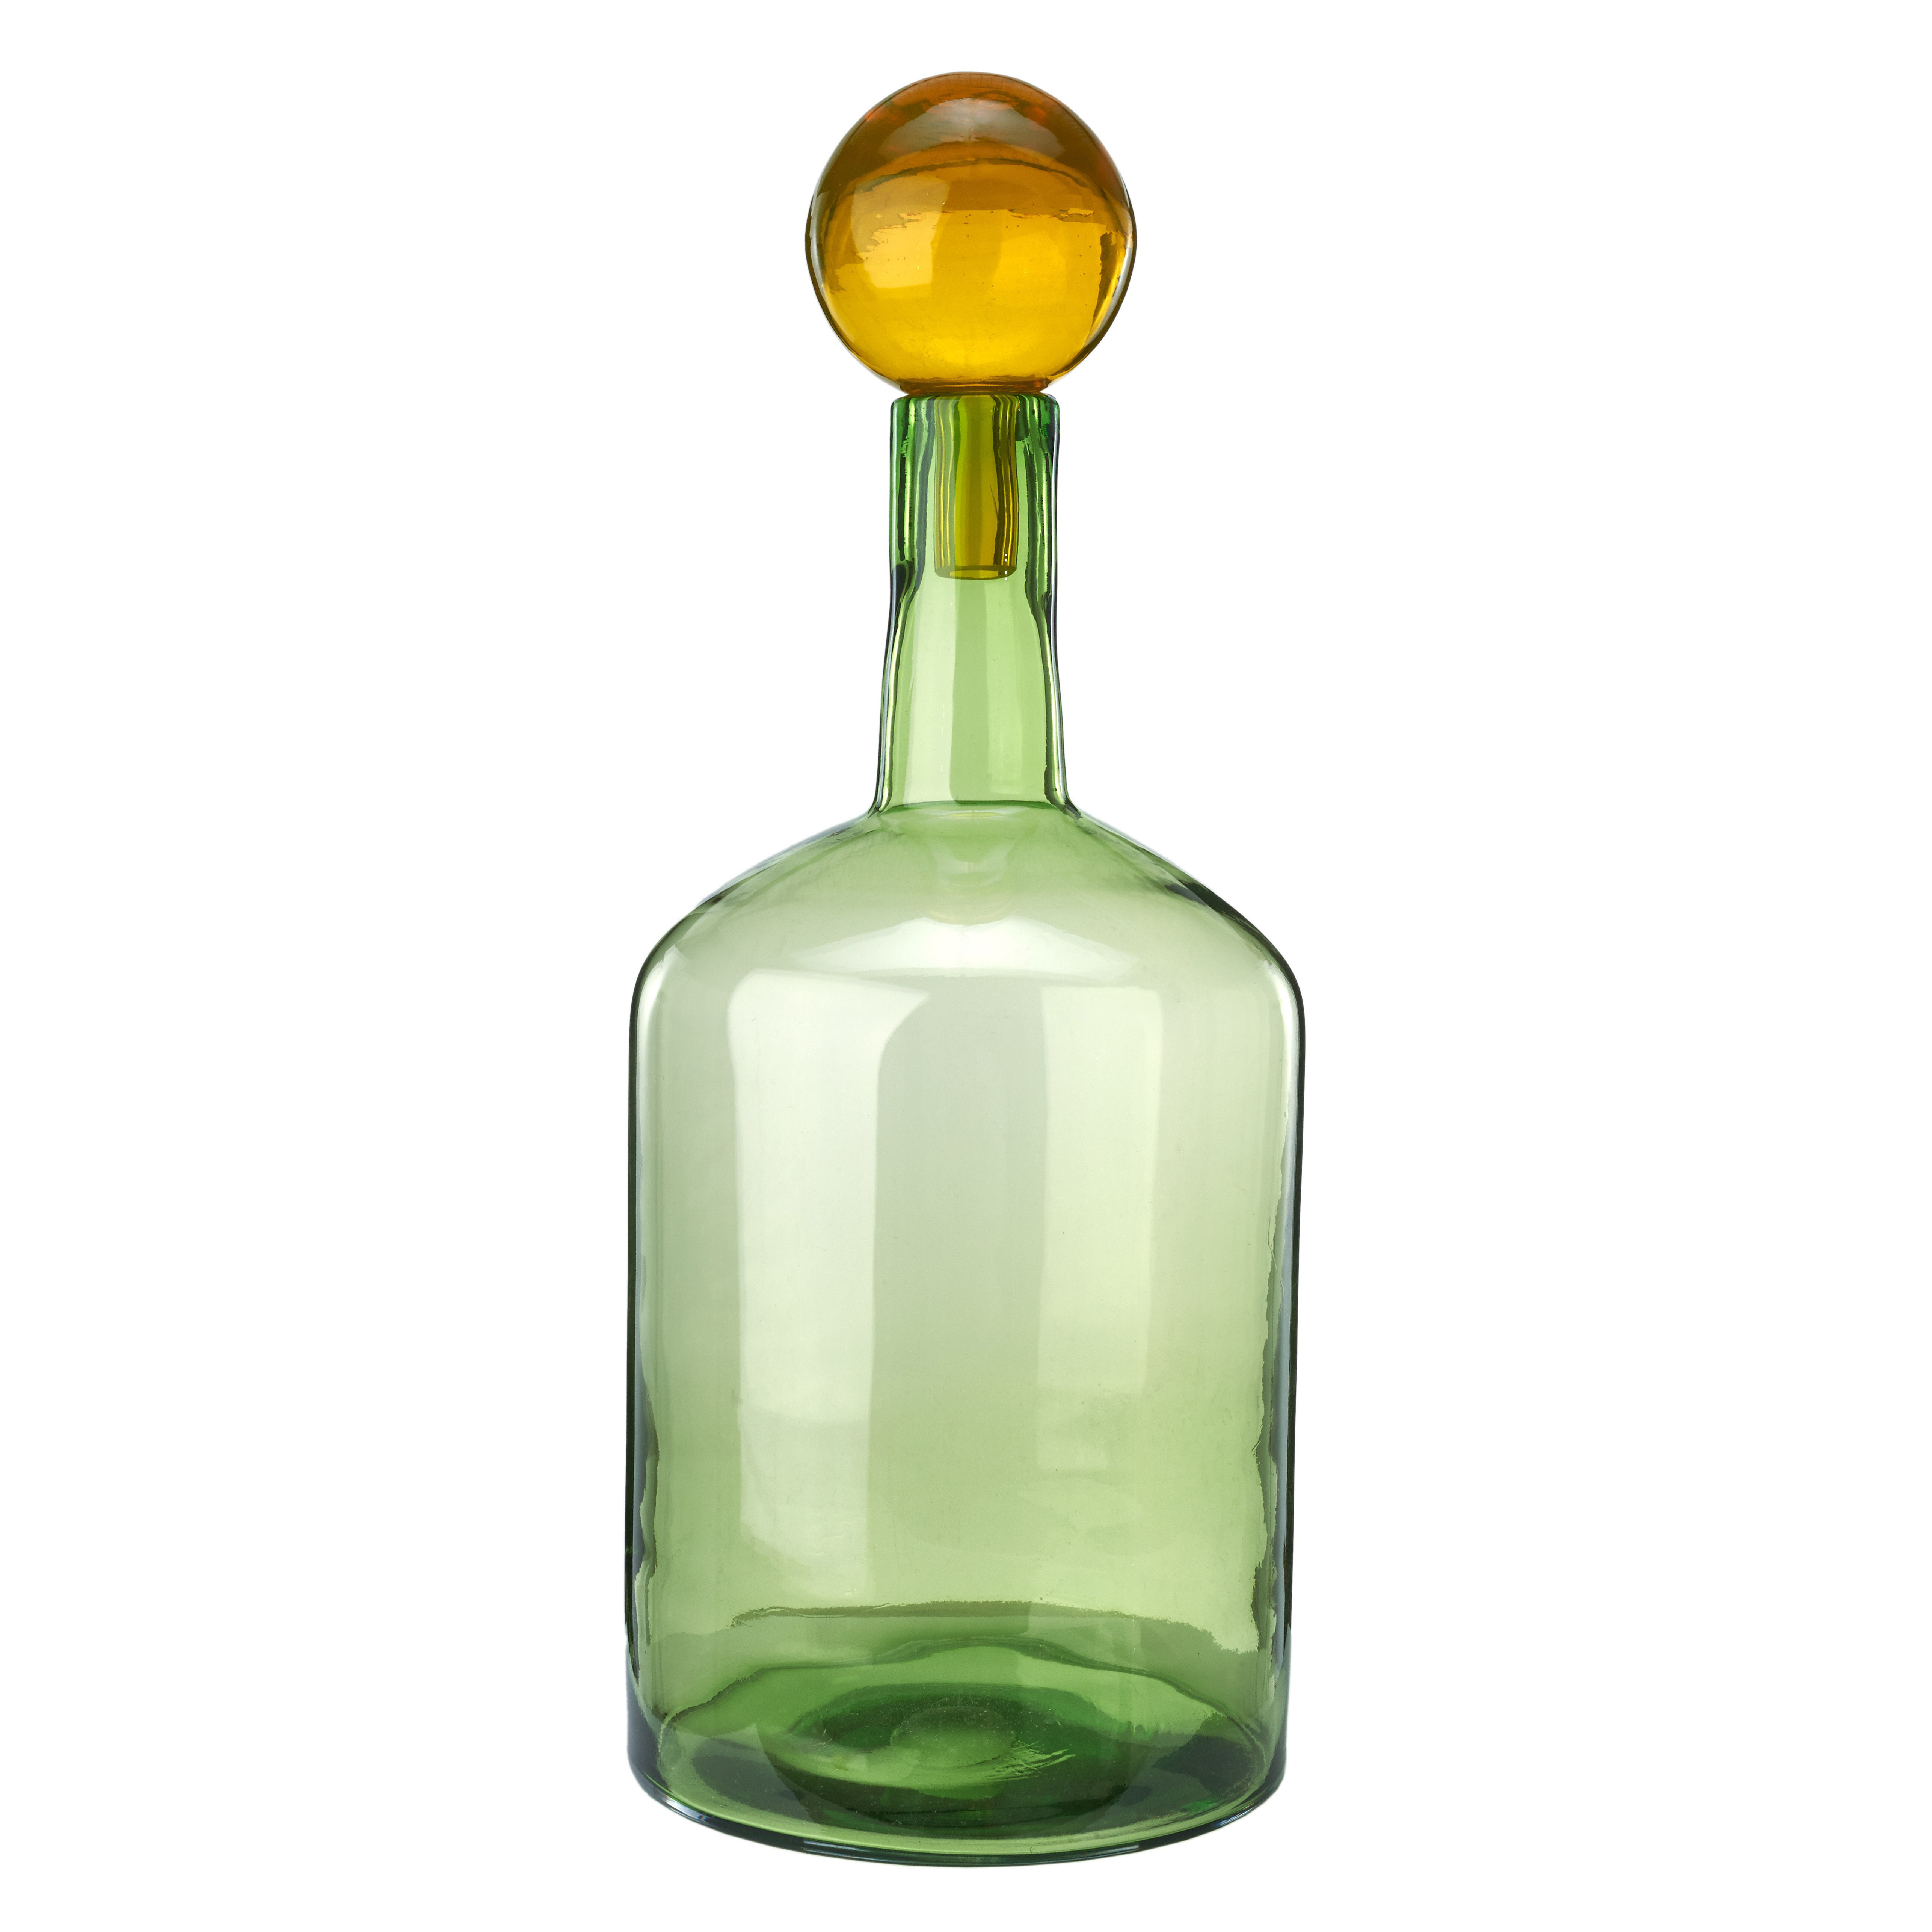 Бутылки пузырьки. Pols potten 140205286 бутылка. Пузырь бутылка. Бутылка Экстра. Бутылка 1,5 "бабл" в оплетке.